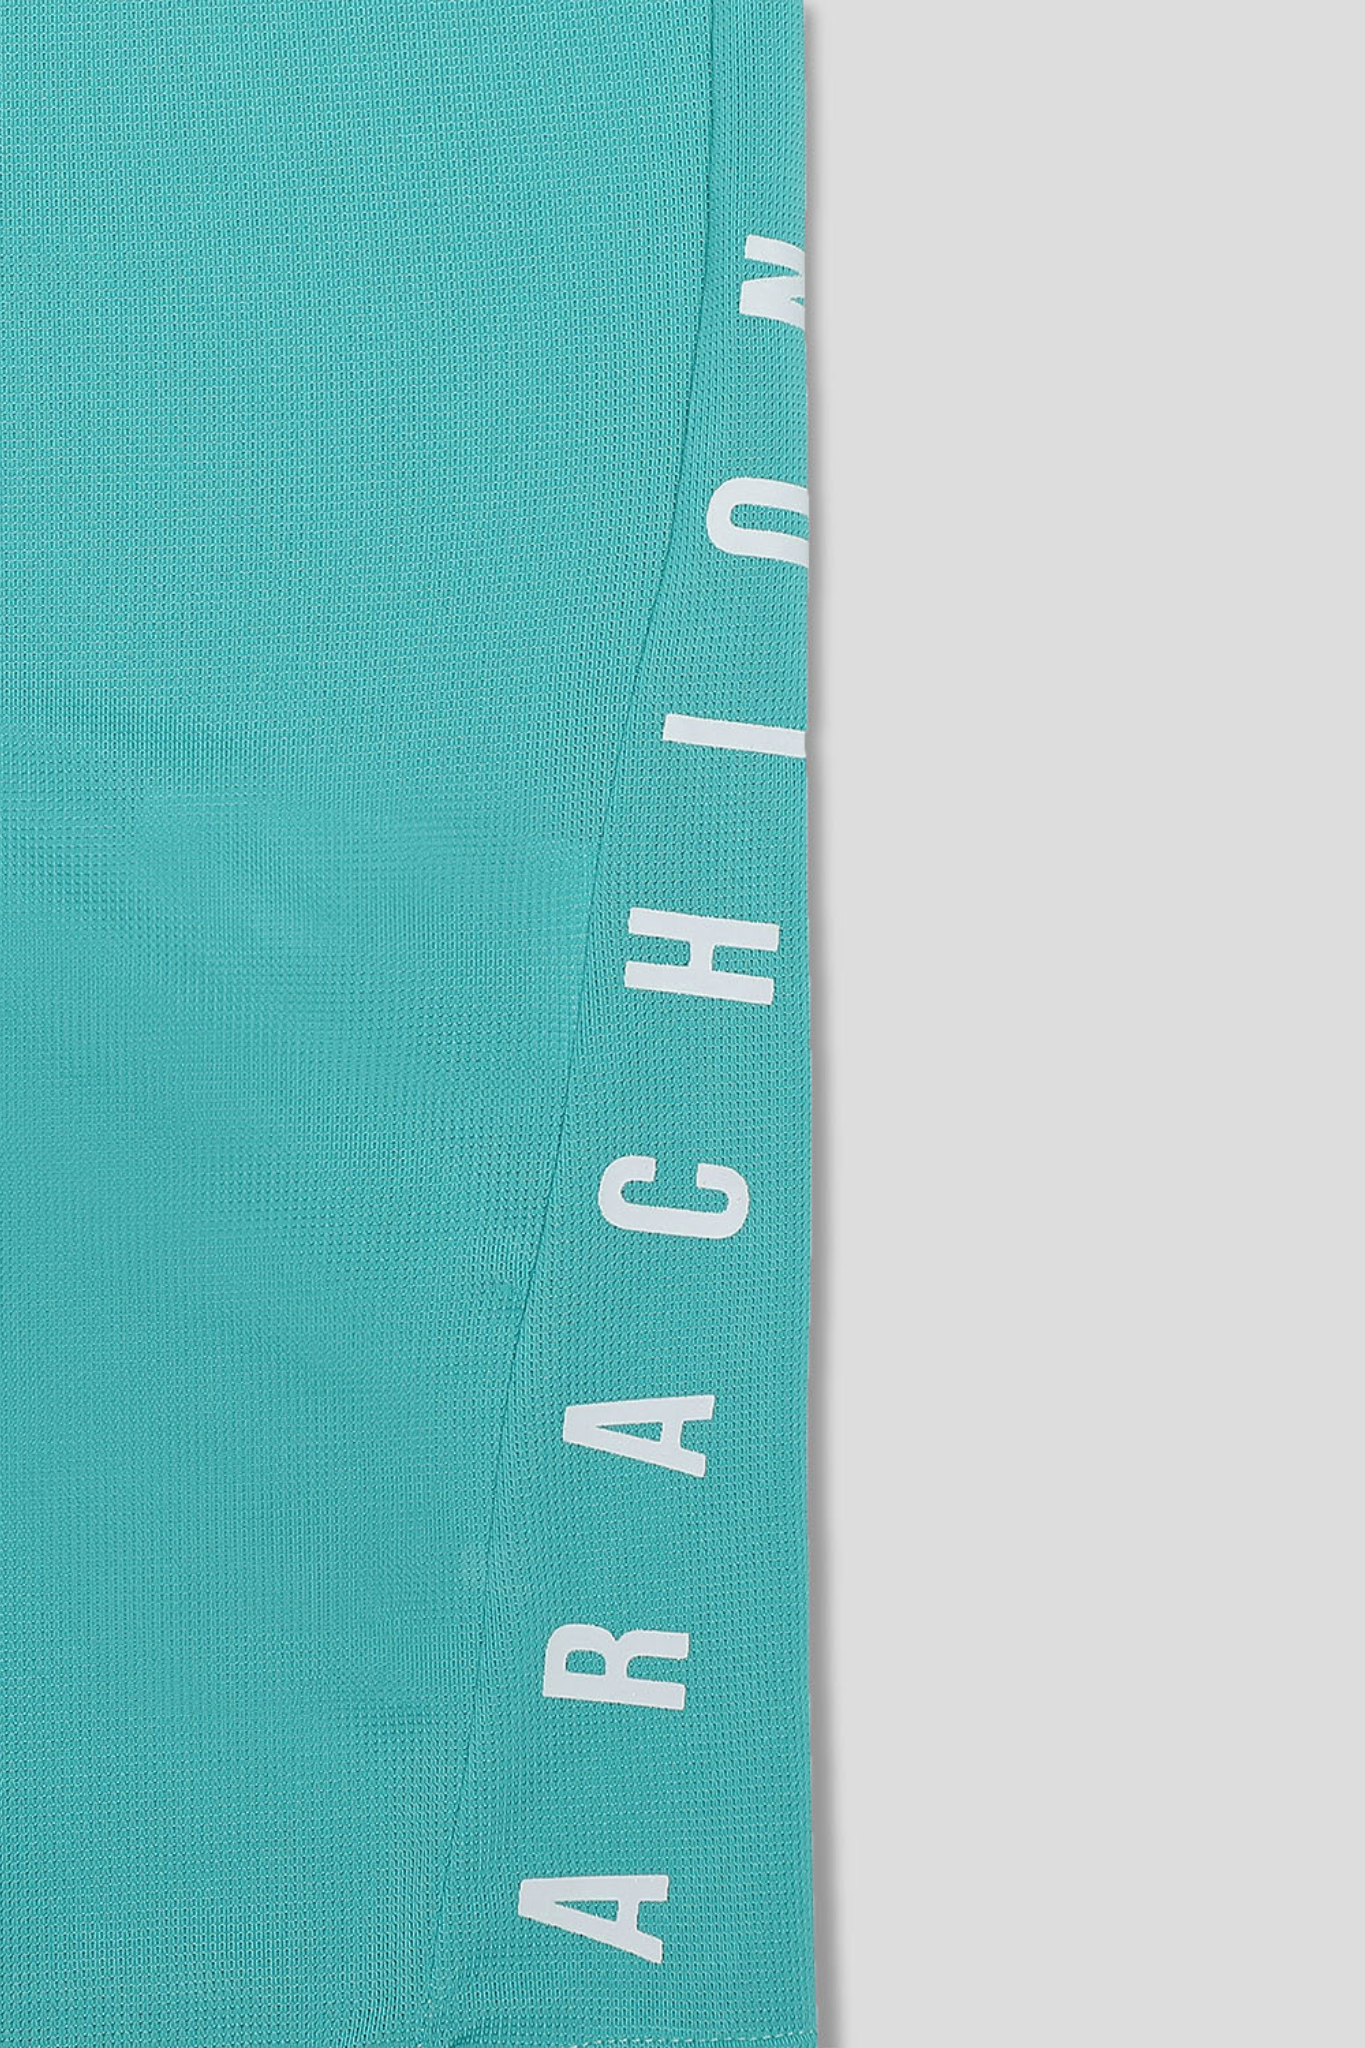 Arachion Triumph T-shirt | Aquamarine Green